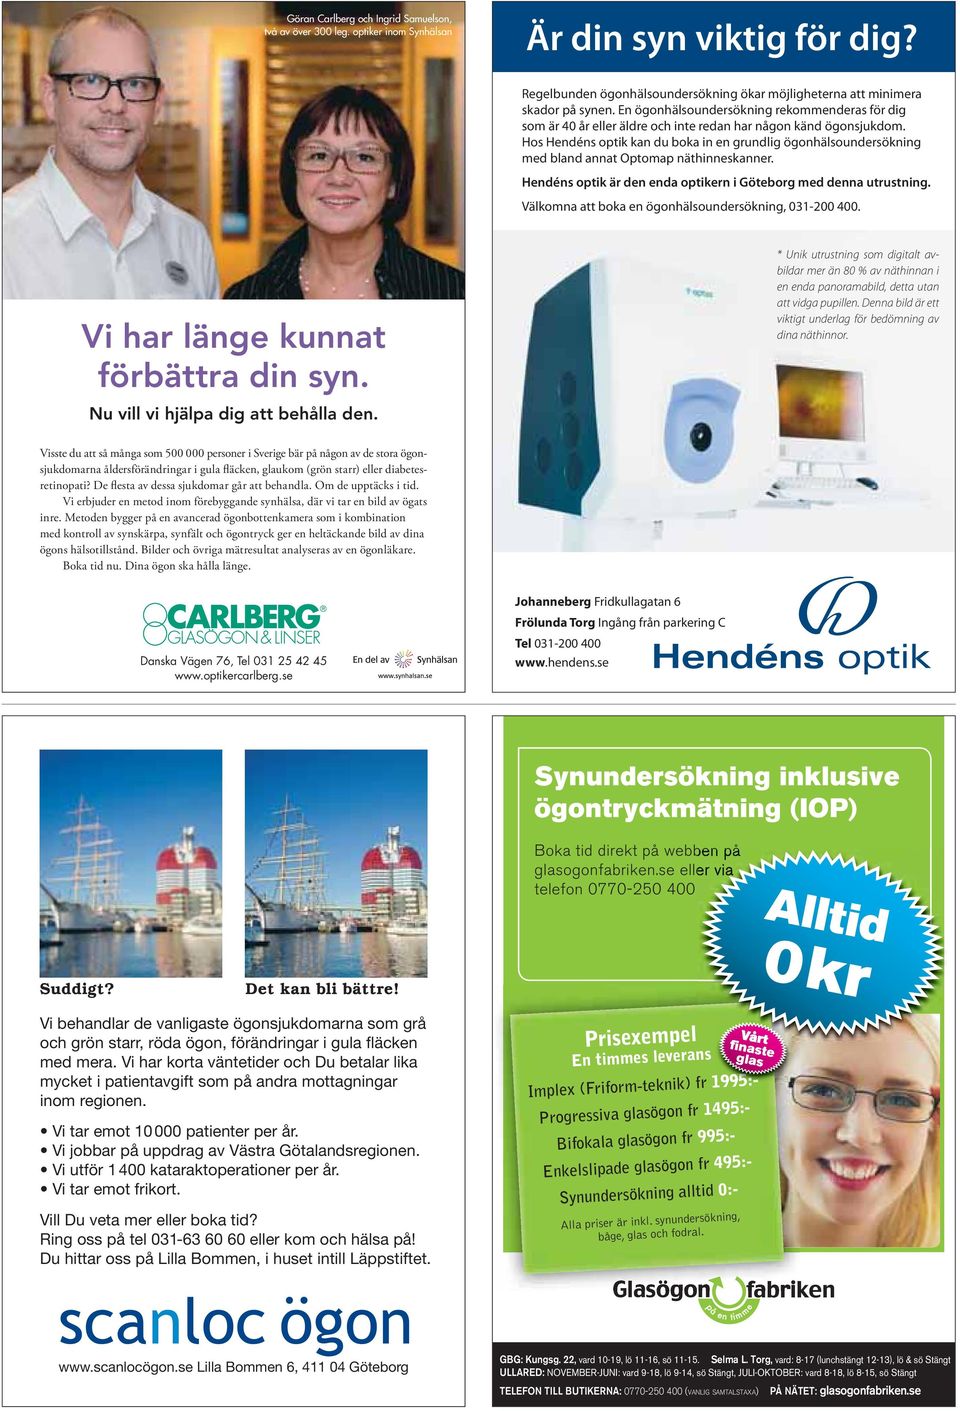 Hos Hendéns optik kan du boka in en grundlig ögonhälsoundersökning med bland annat Optomap näthinneskanner. Hendéns optik är den enda optikern i Göteborg med denna utrustning.